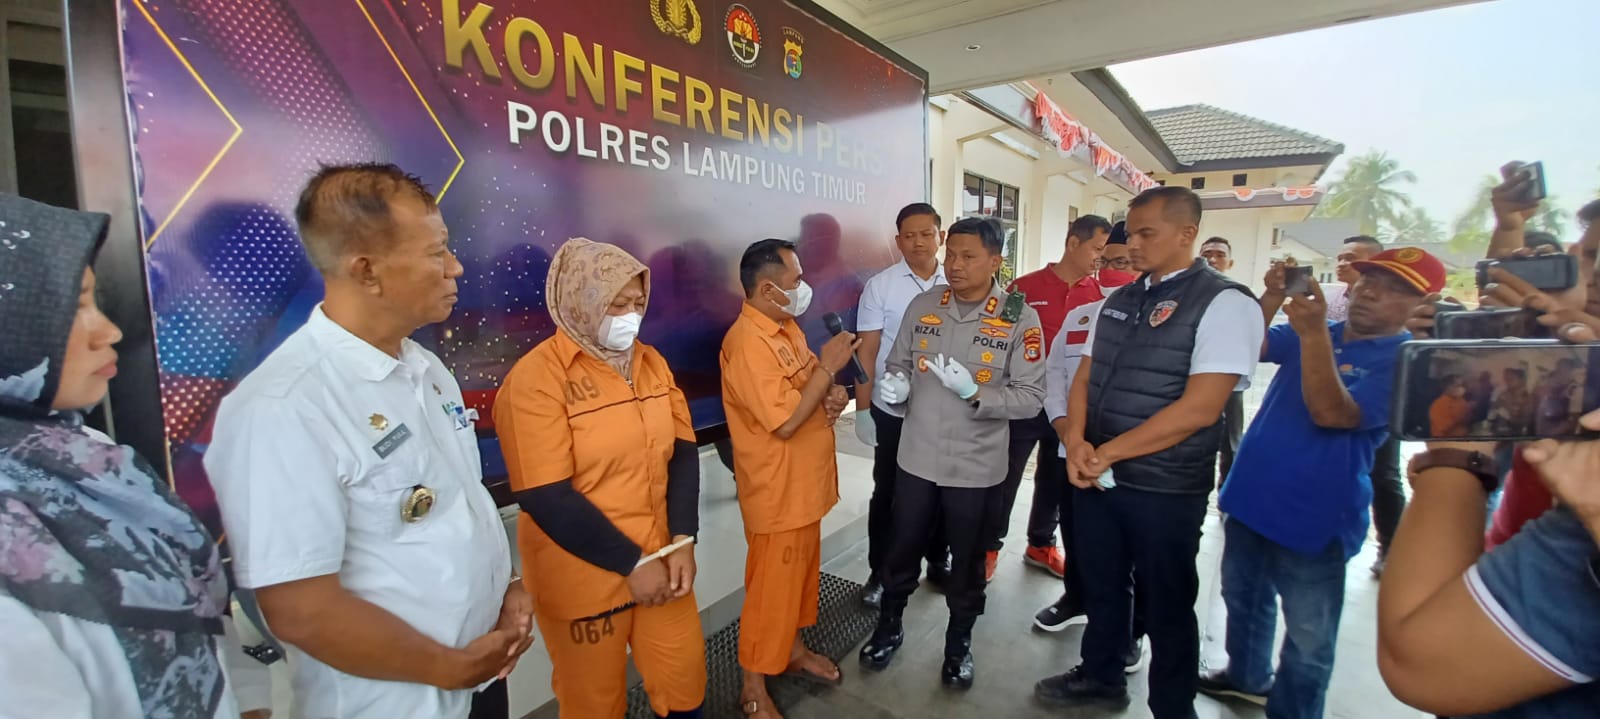 Polres Lampung Timur Amankan 2 Tersangka Kasus Perdagangan Orang